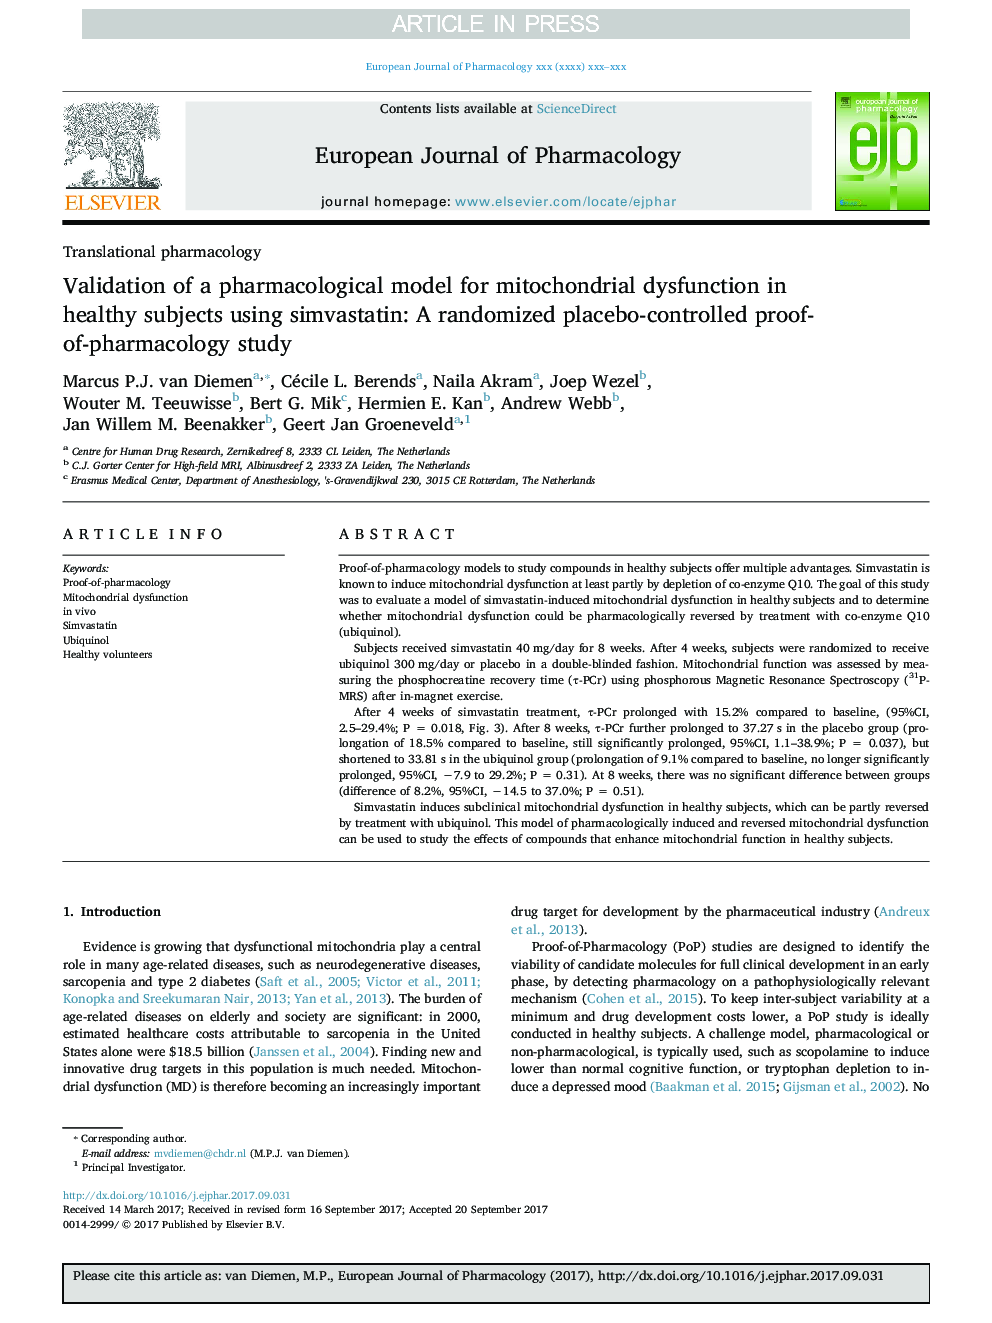 اعتبارسنجی یک مدل فارماکولوژیک برای اختلال عملکرد میتوکندری در افراد سالم با استفاده از سیمواستاتین: یک مطالعه اثربخشی فارماکولوژیک تحت کنترل دارونما 